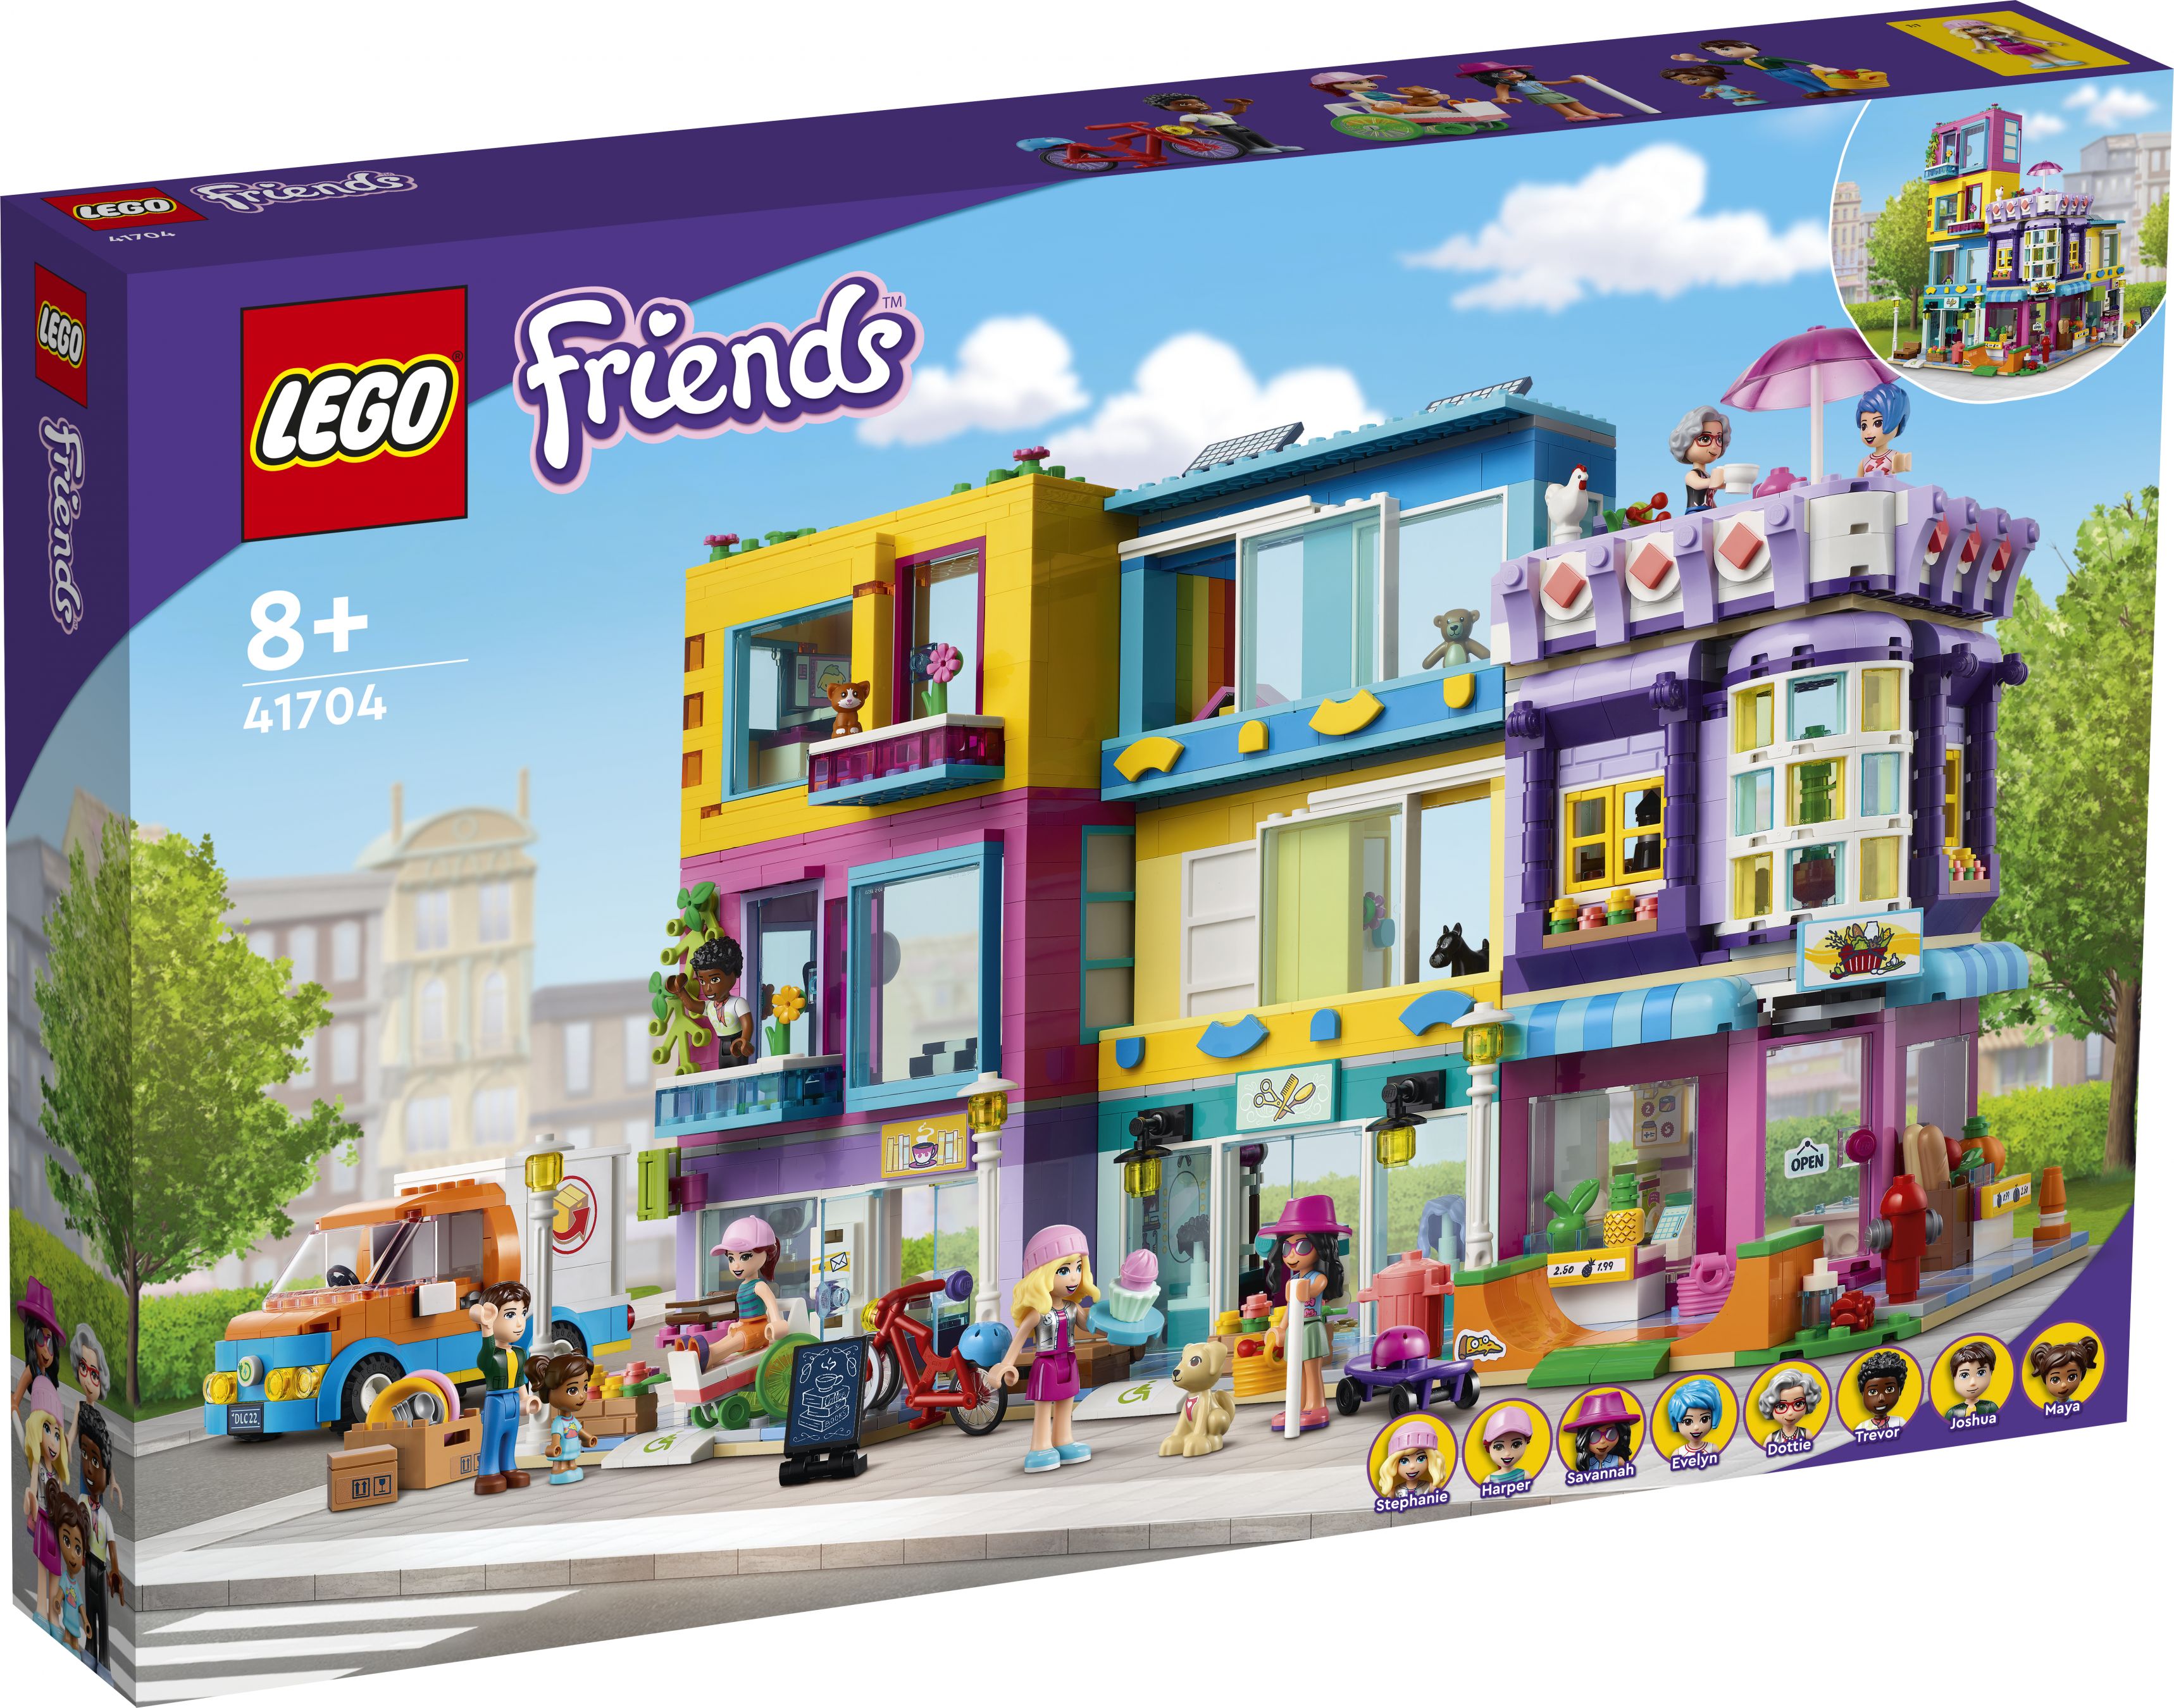 LEGO Friends 41704 Wohnblock LEGO_41704_Box1_v29.jpg